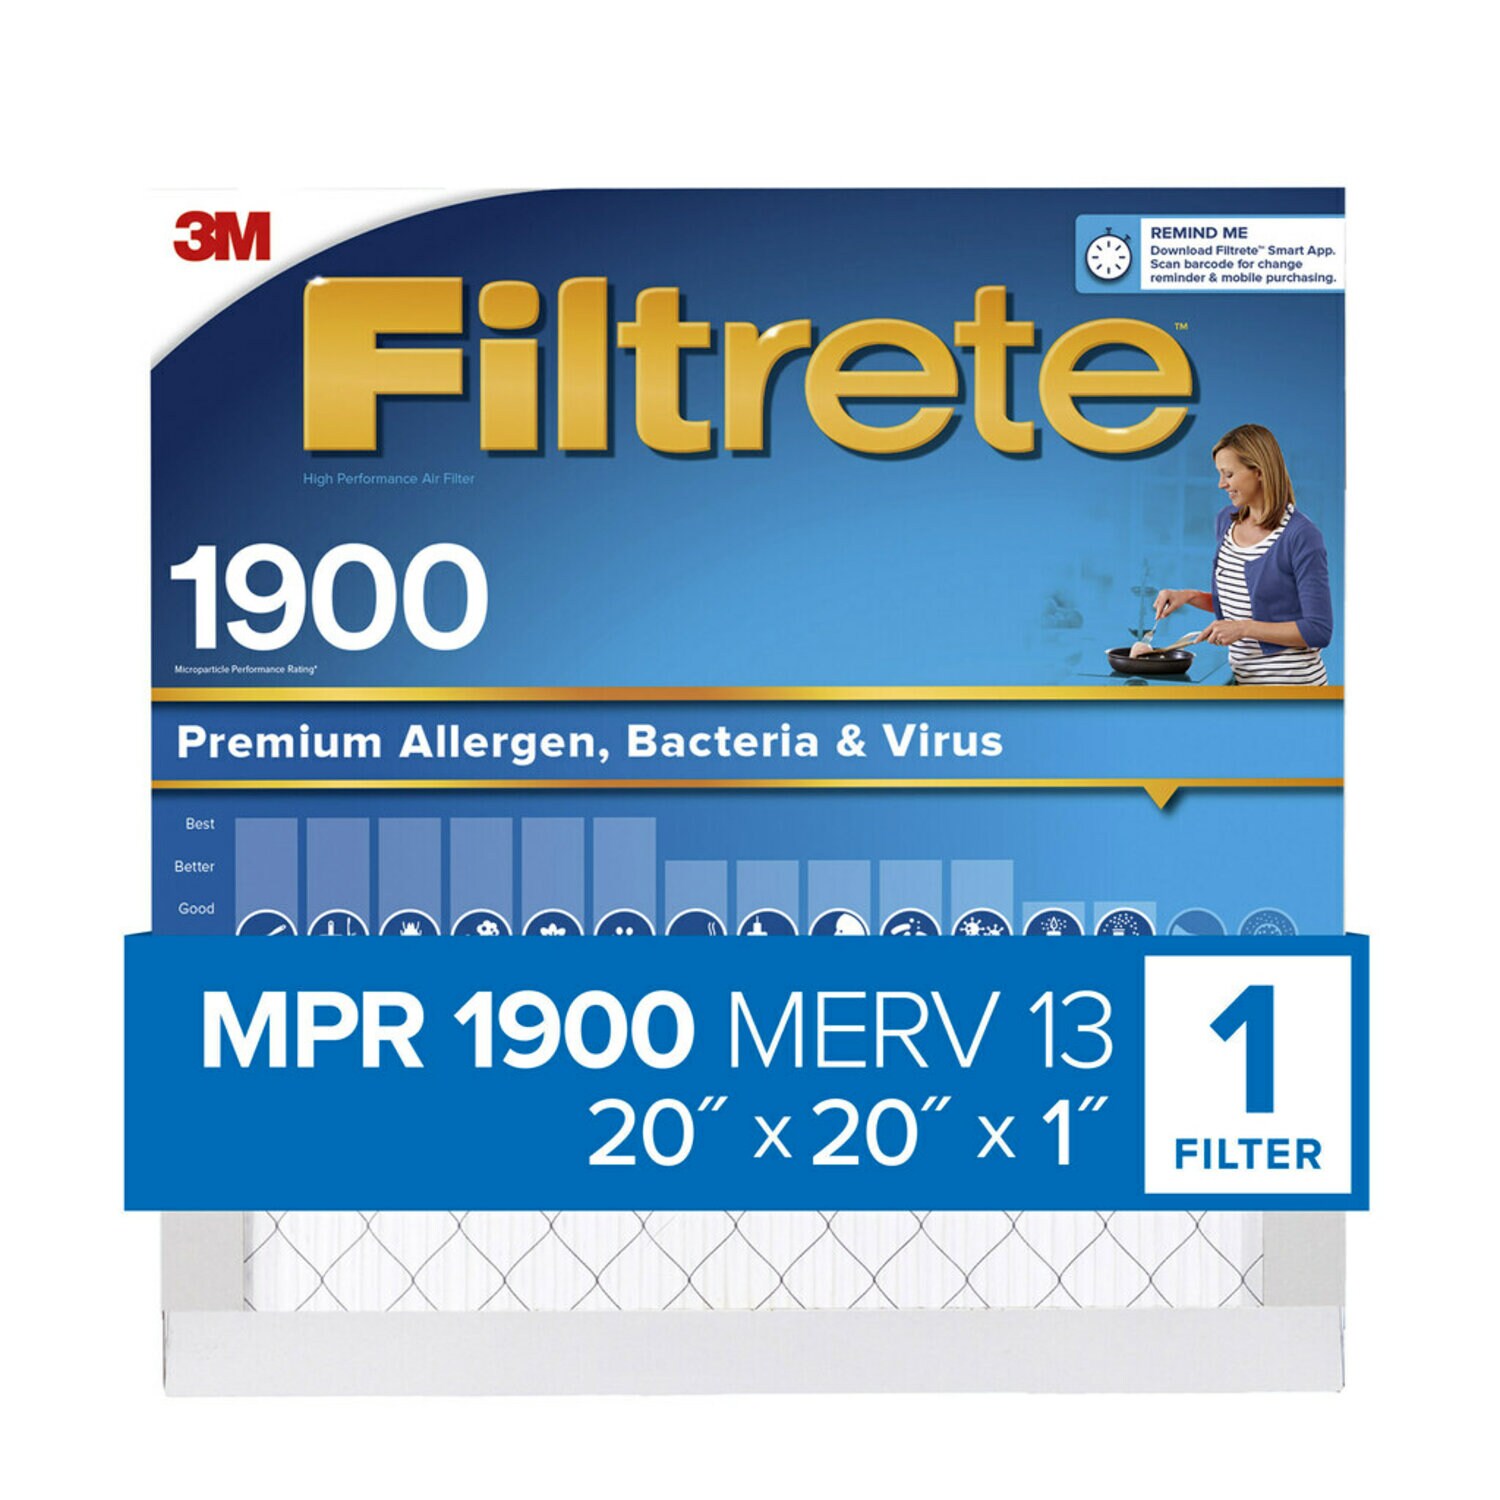 7100268221 - Filtrete High Performance Air Filter 1900 MPR UA02-4, 20 in x 20 in x 1 in (50.8 cm x 50.8 cm x 2.5 cm)